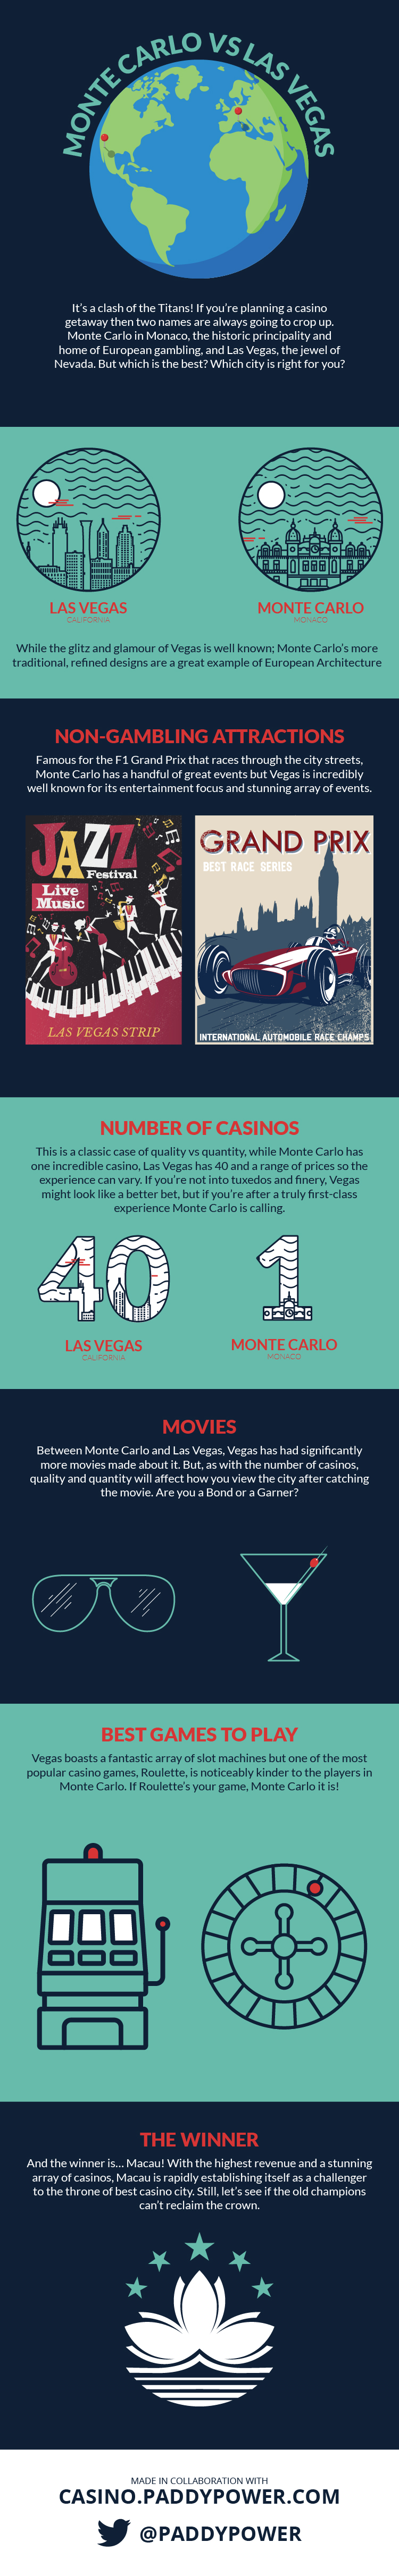 Las Vegas vs Monte Carlo